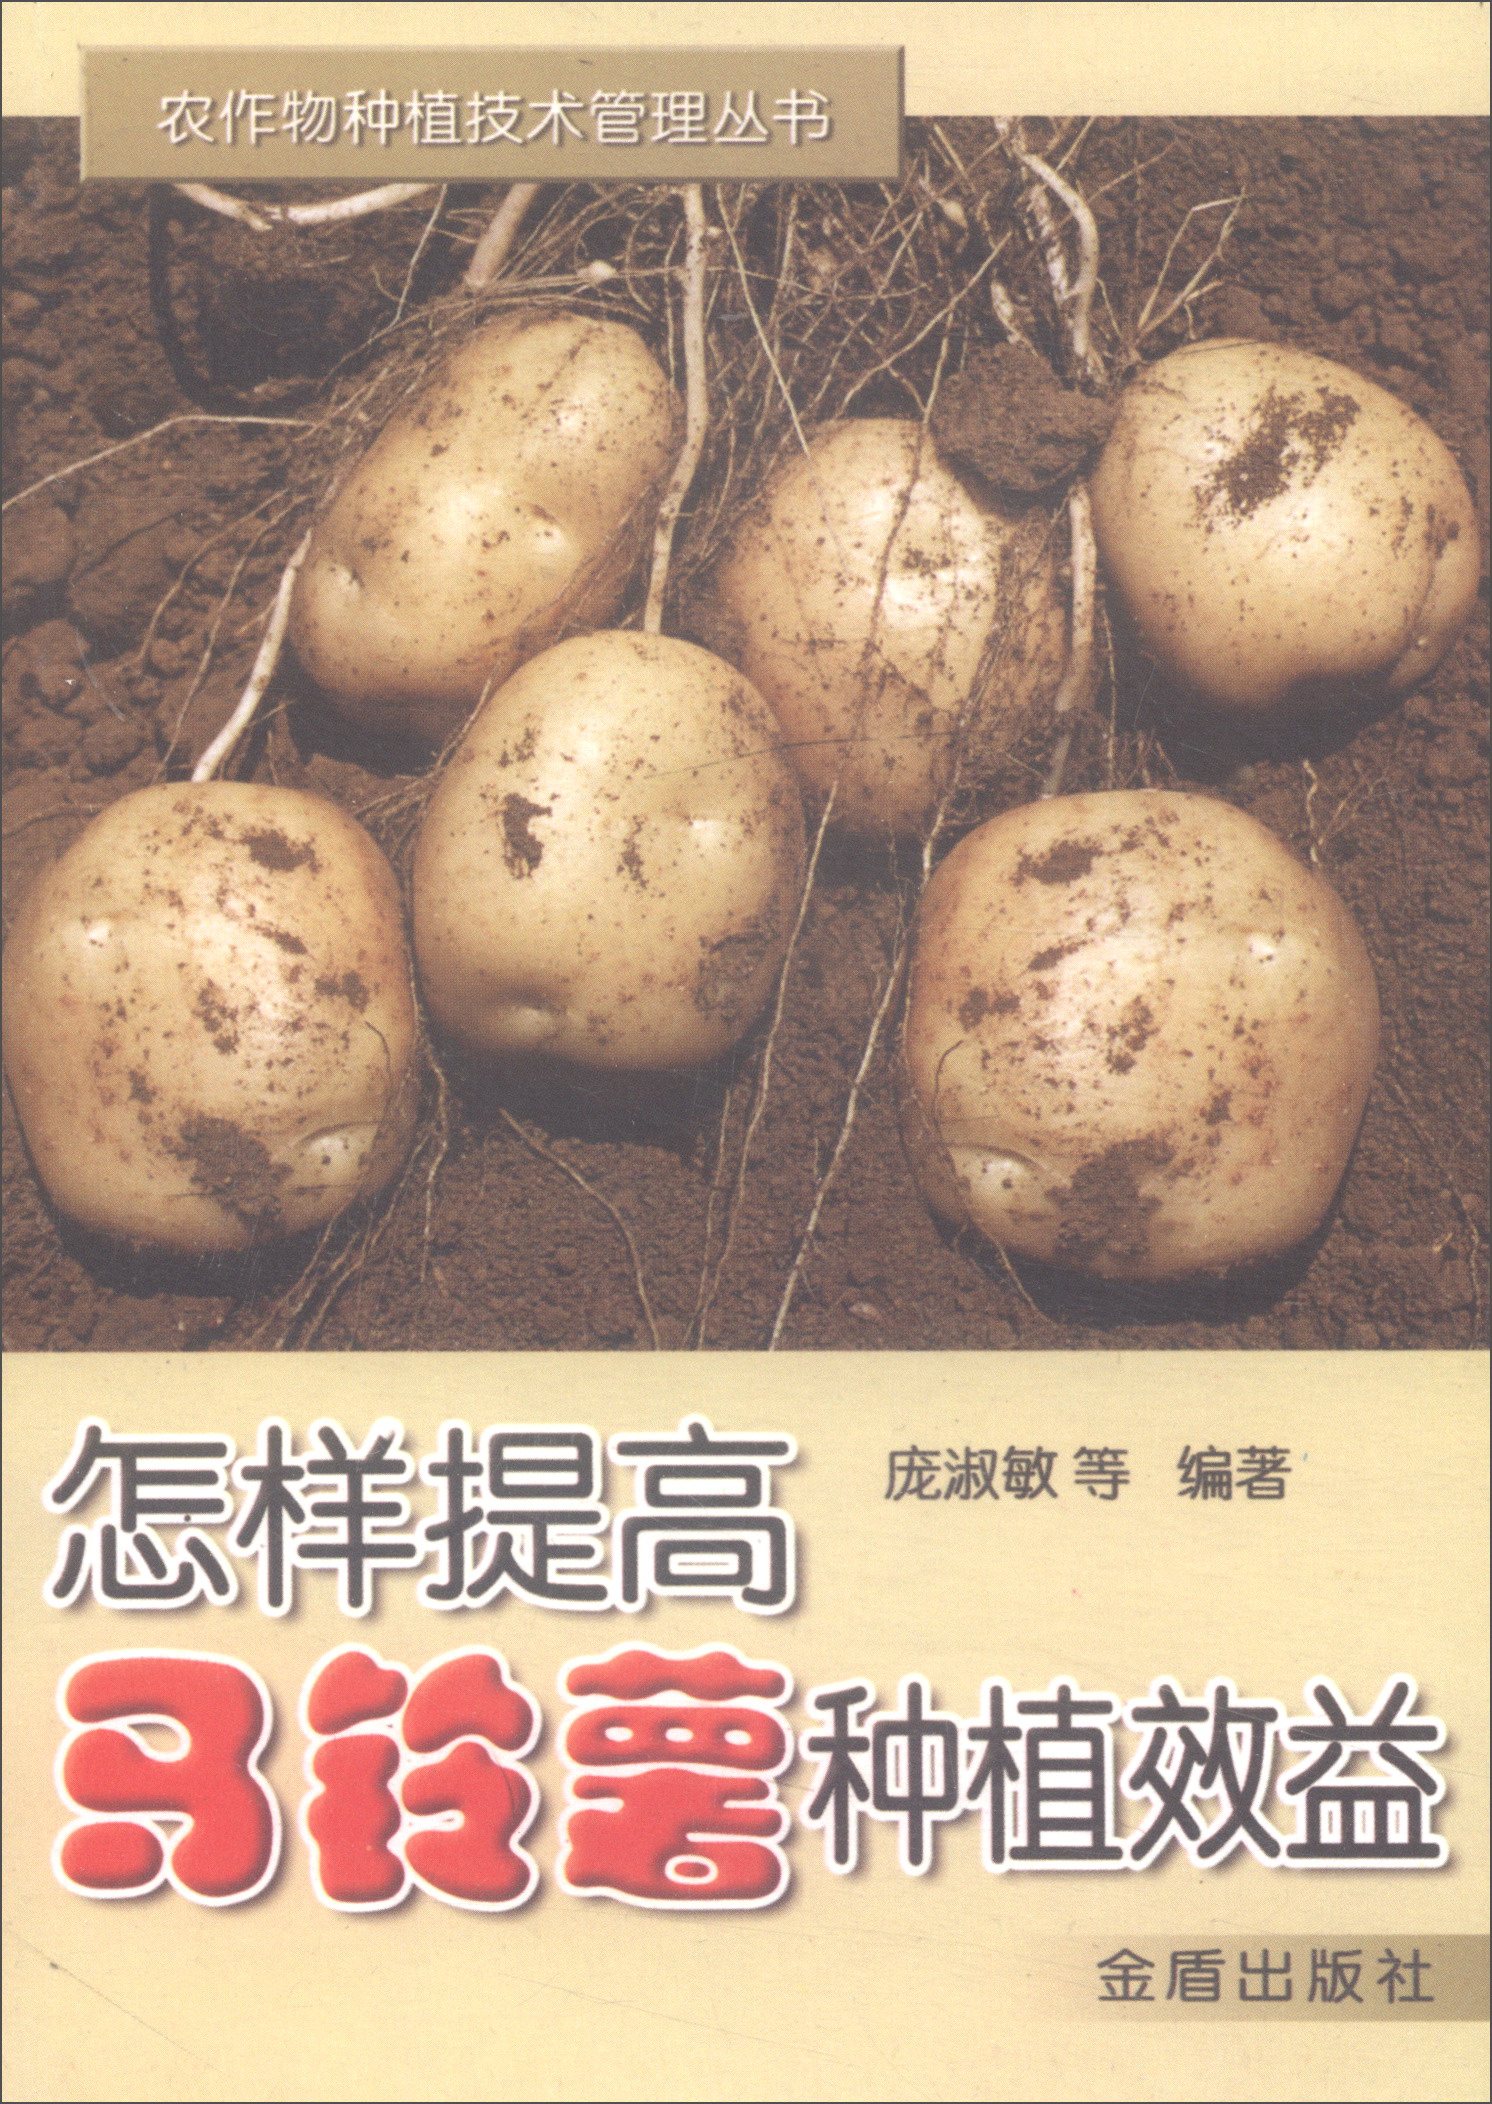 怎样提高马铃薯种植效益/农作物种植技术管理丛书 azw3格式下载